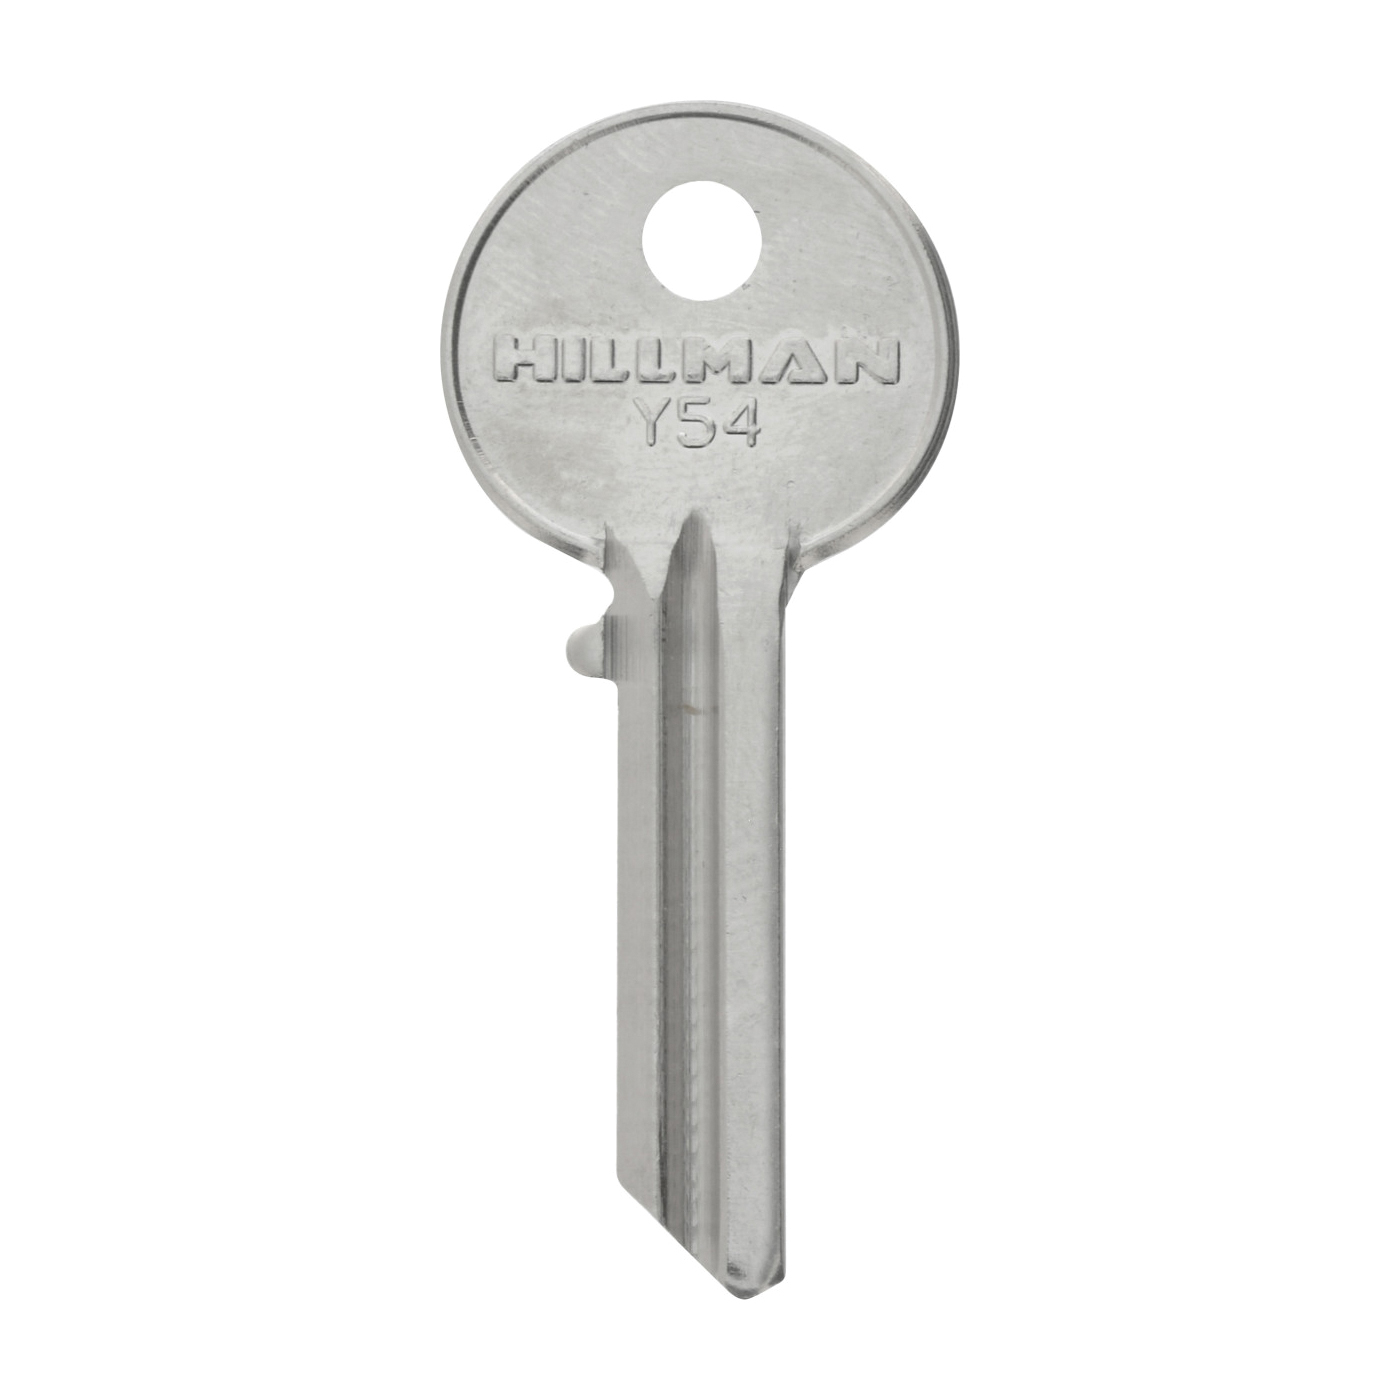 Hillman 441650 Key, For: Yale Locks